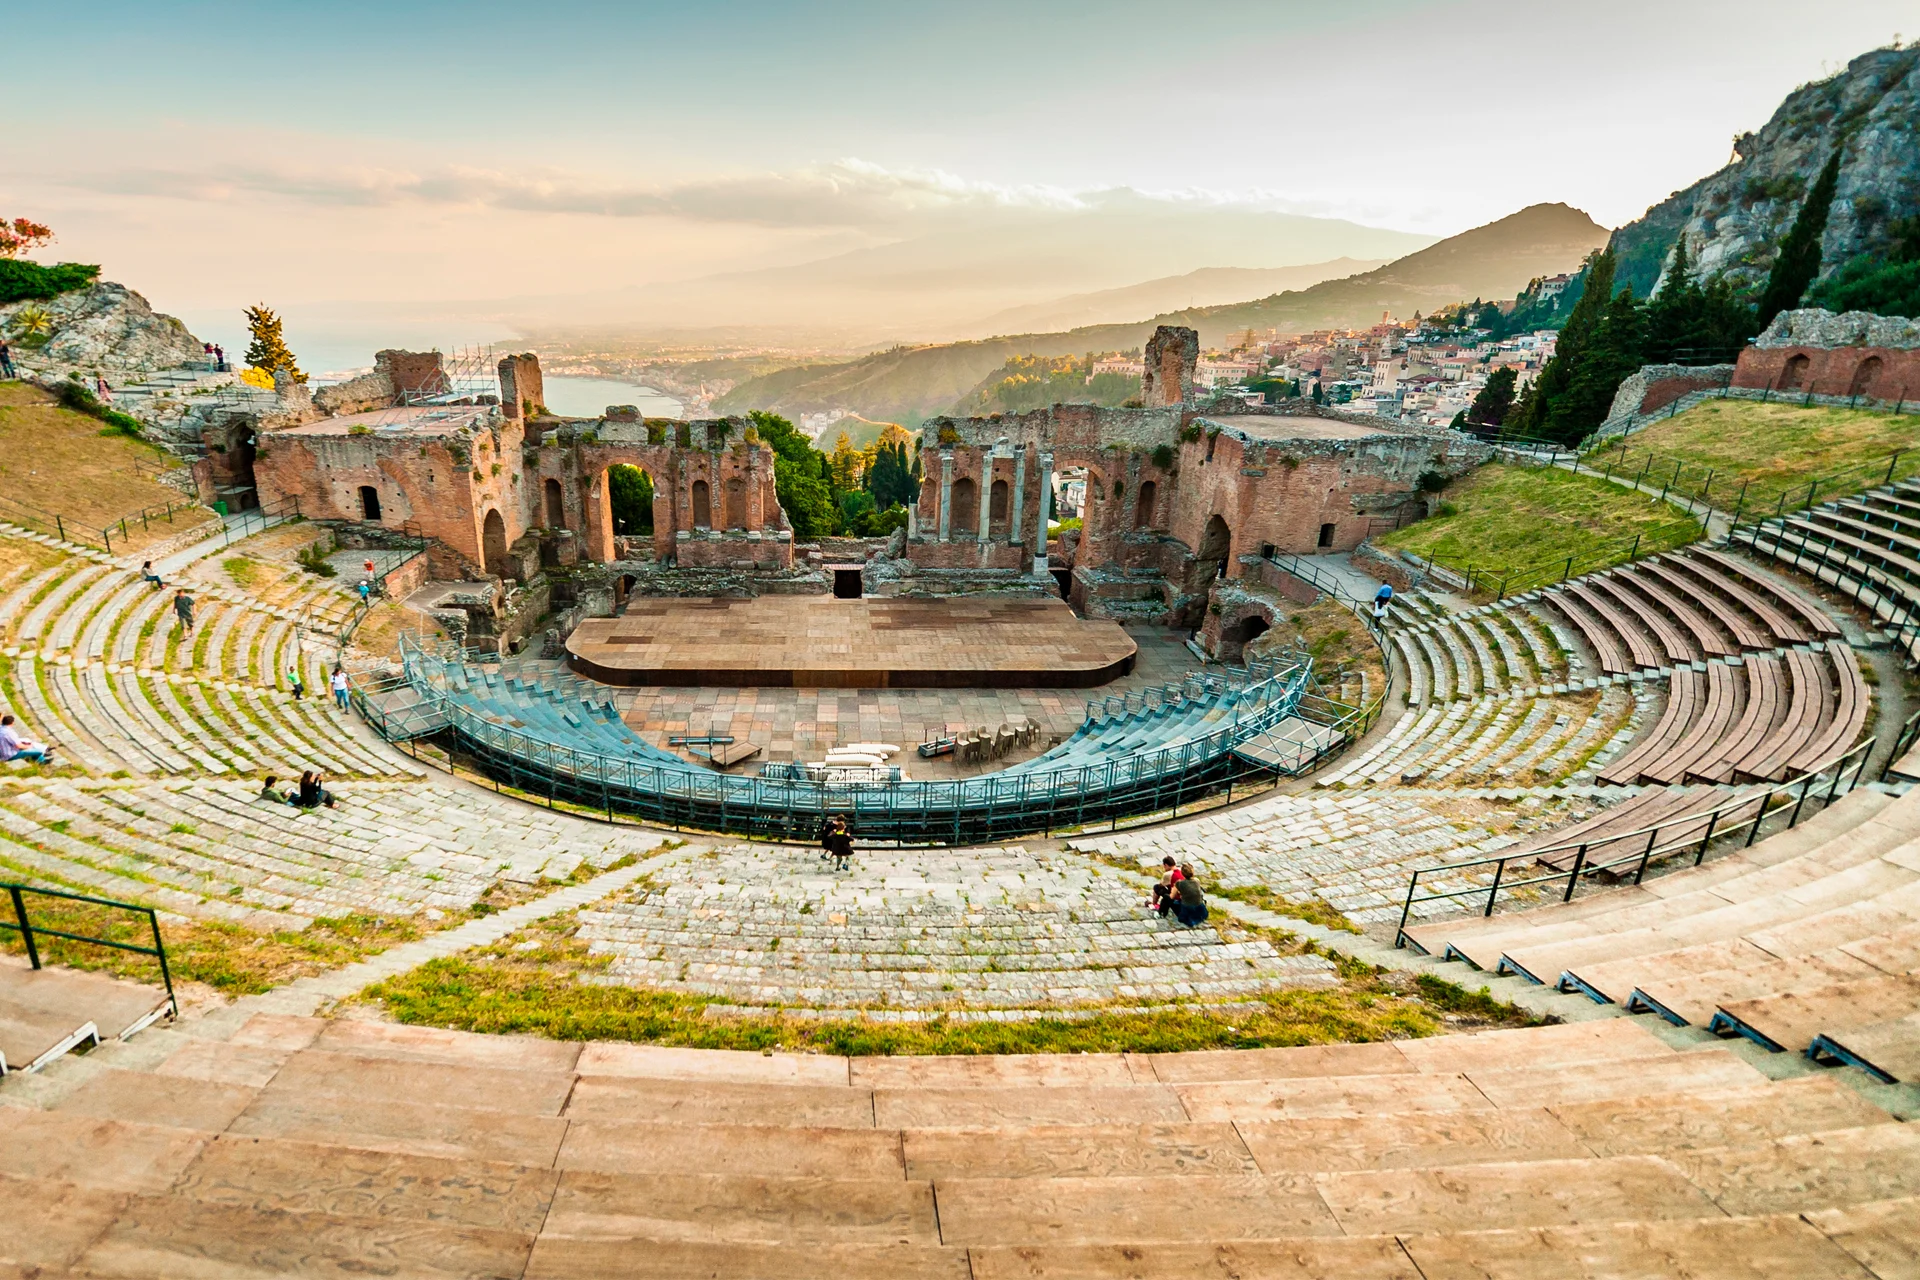 Vacanza culturale in Sicilia all'insegna dei suoi antichi monumenti